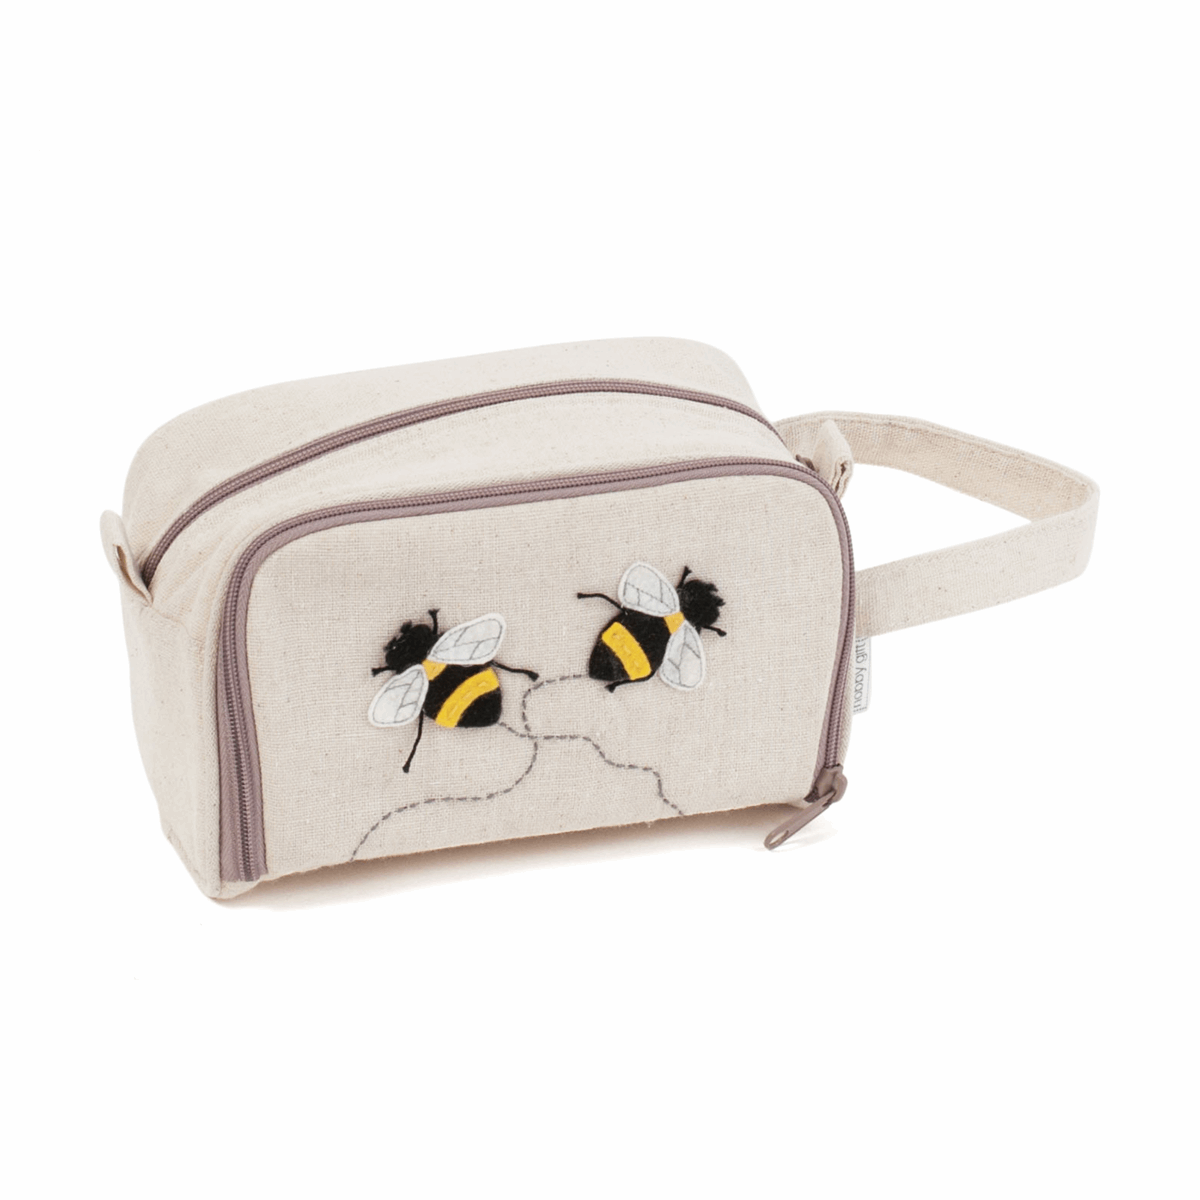 Crochet Hook Bag with Zip - Bee